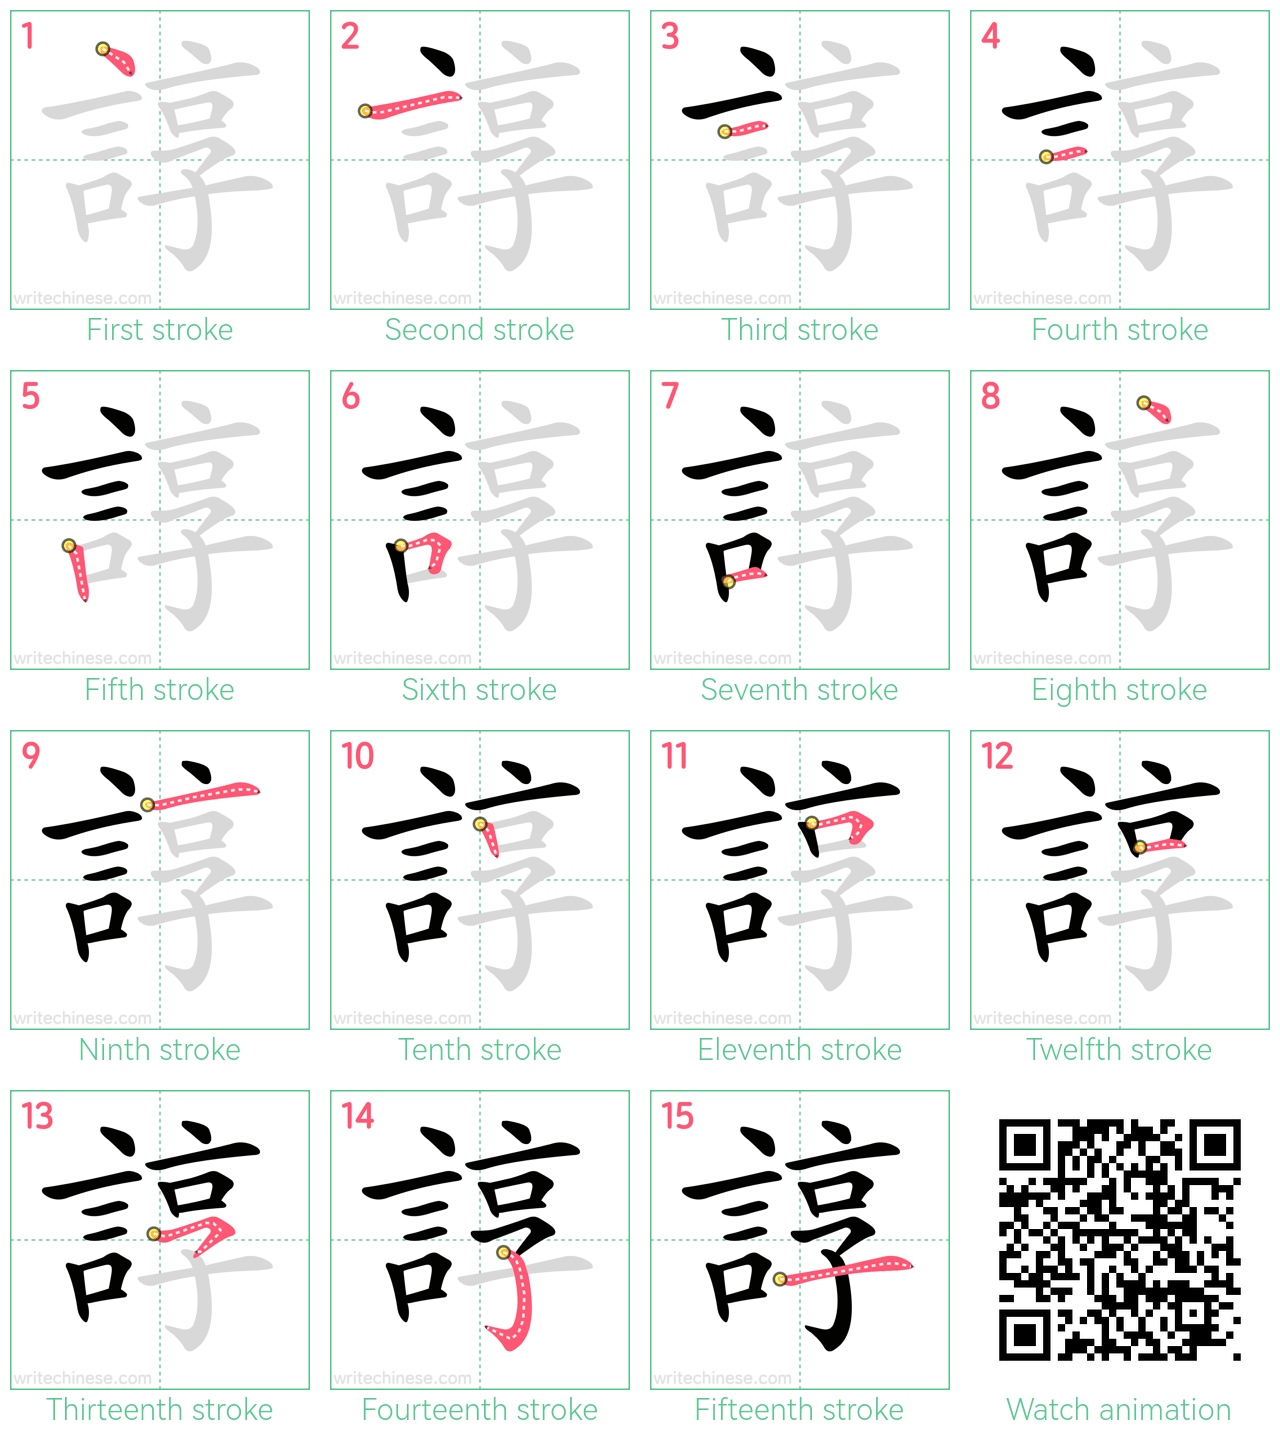 諄 step-by-step stroke order diagrams